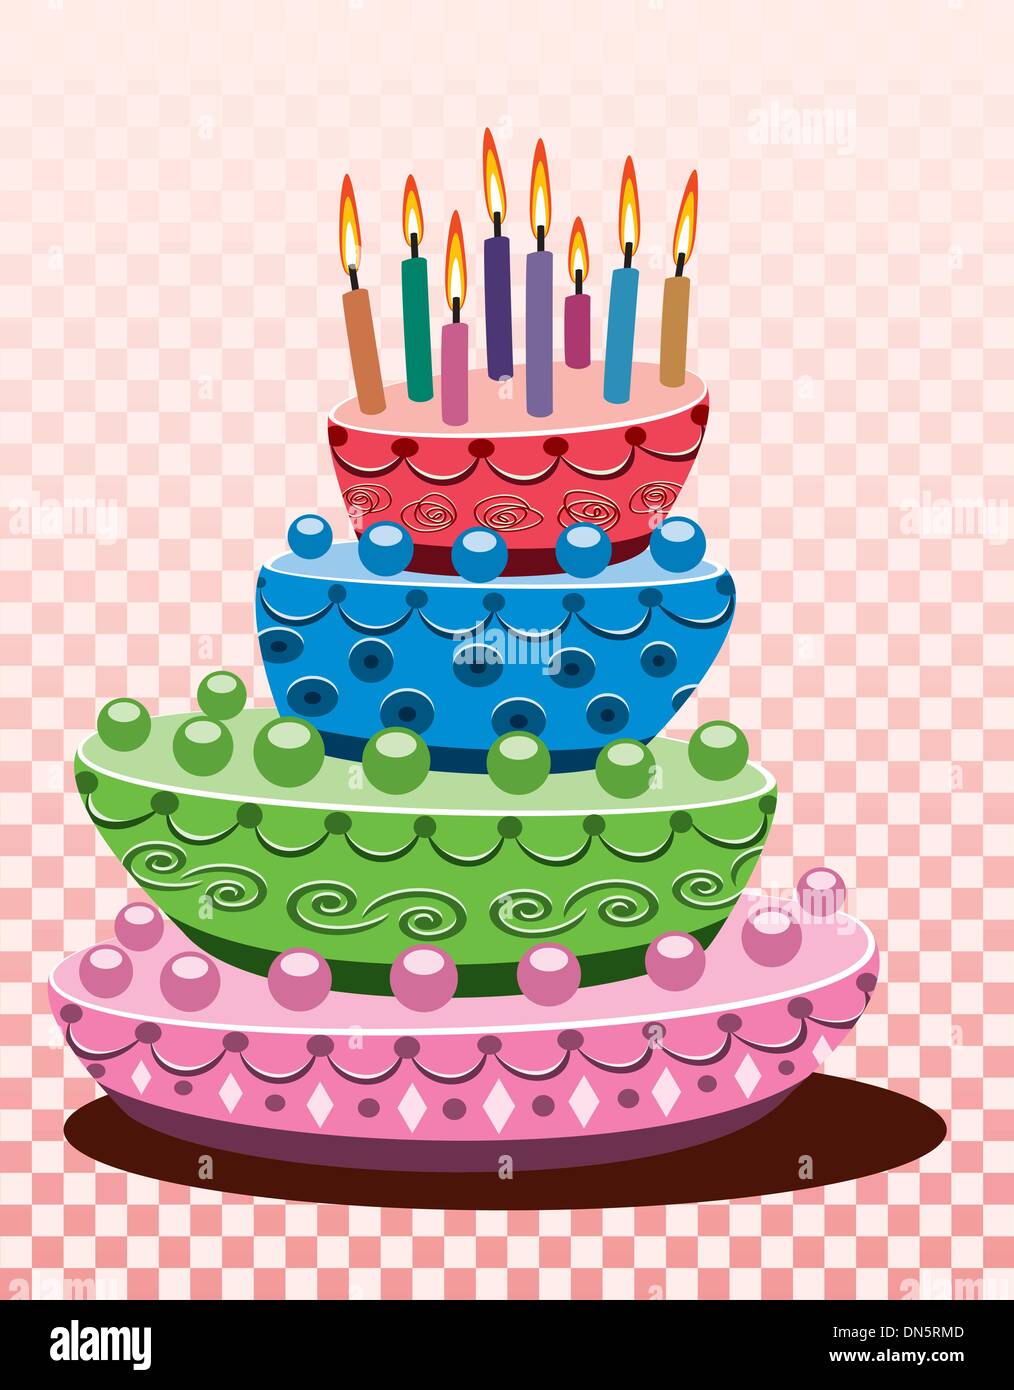 Gâteau d'anniversaire de vecteur Illustration de Vecteur